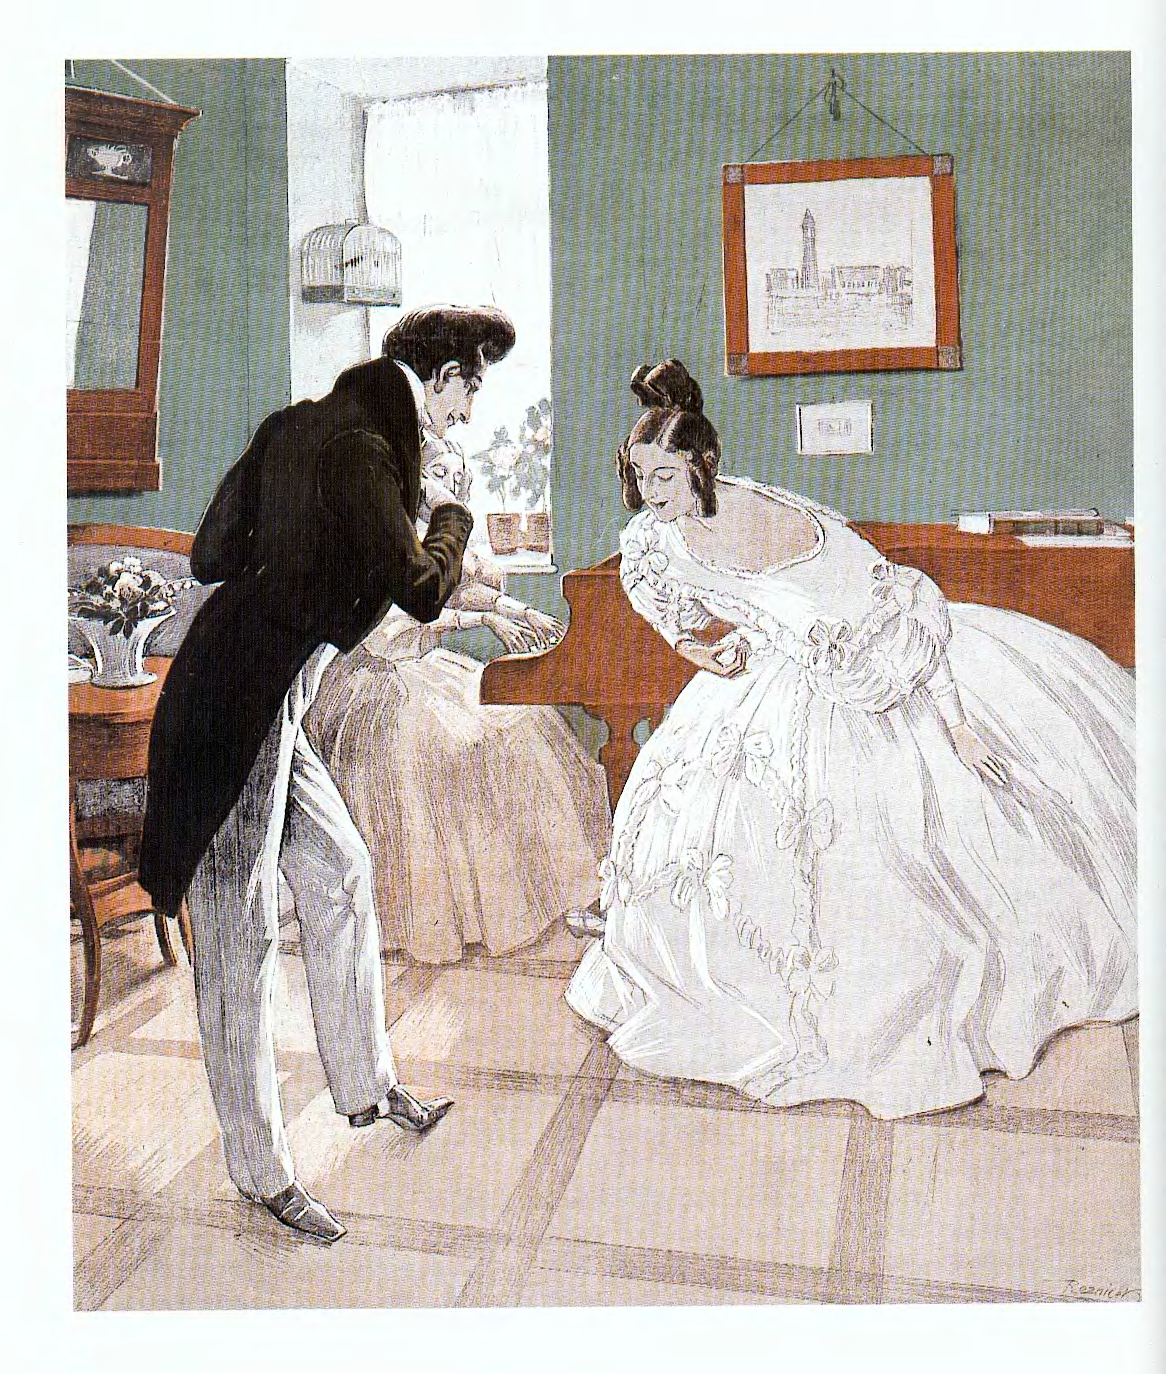 Чья голова послужила чашей на балу. Кавалер приглашает даму на танец. Этикет 19 века. Этикет картины. Реверанс на балу 19 века.